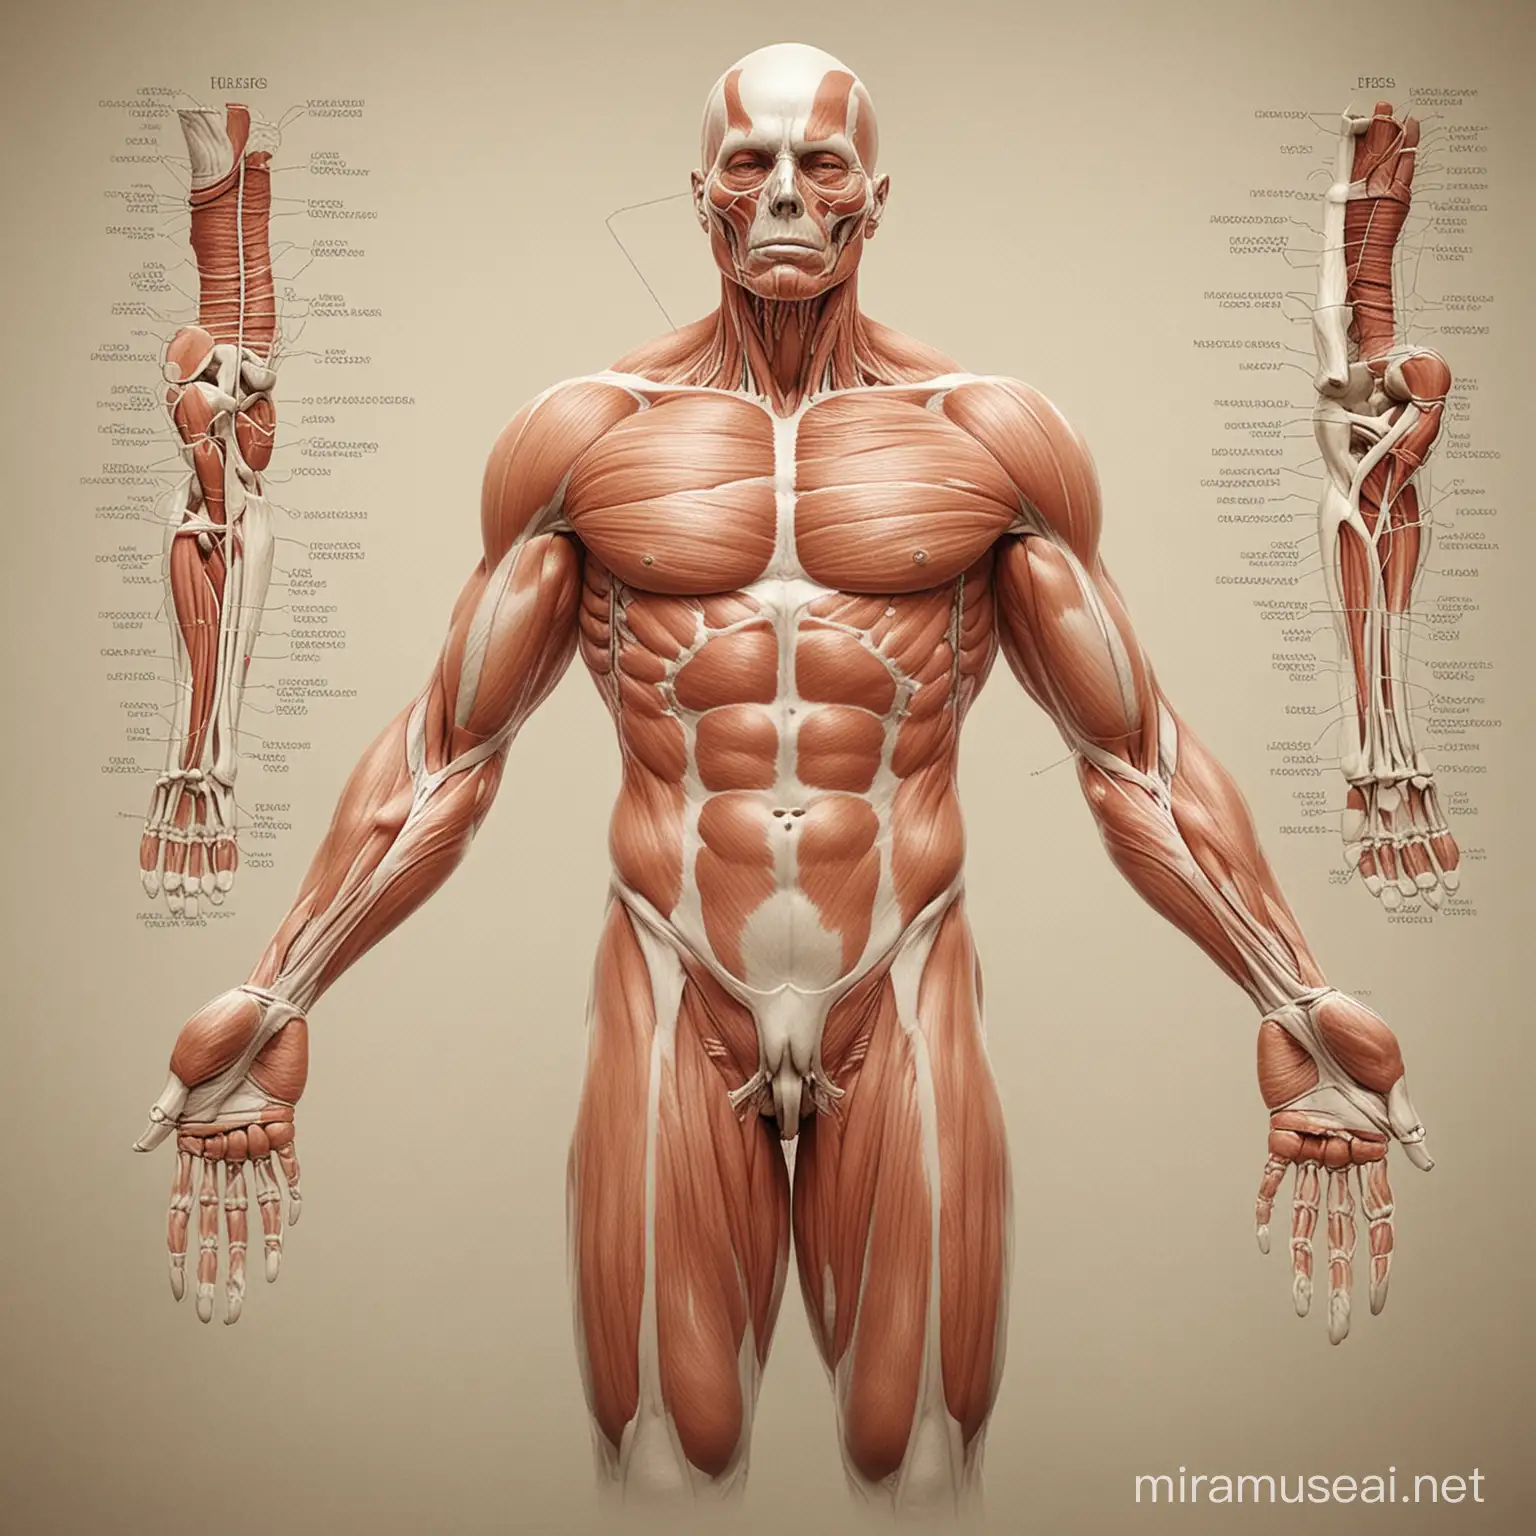 crea imagen de musculos y tejidos del cuerpo humano
